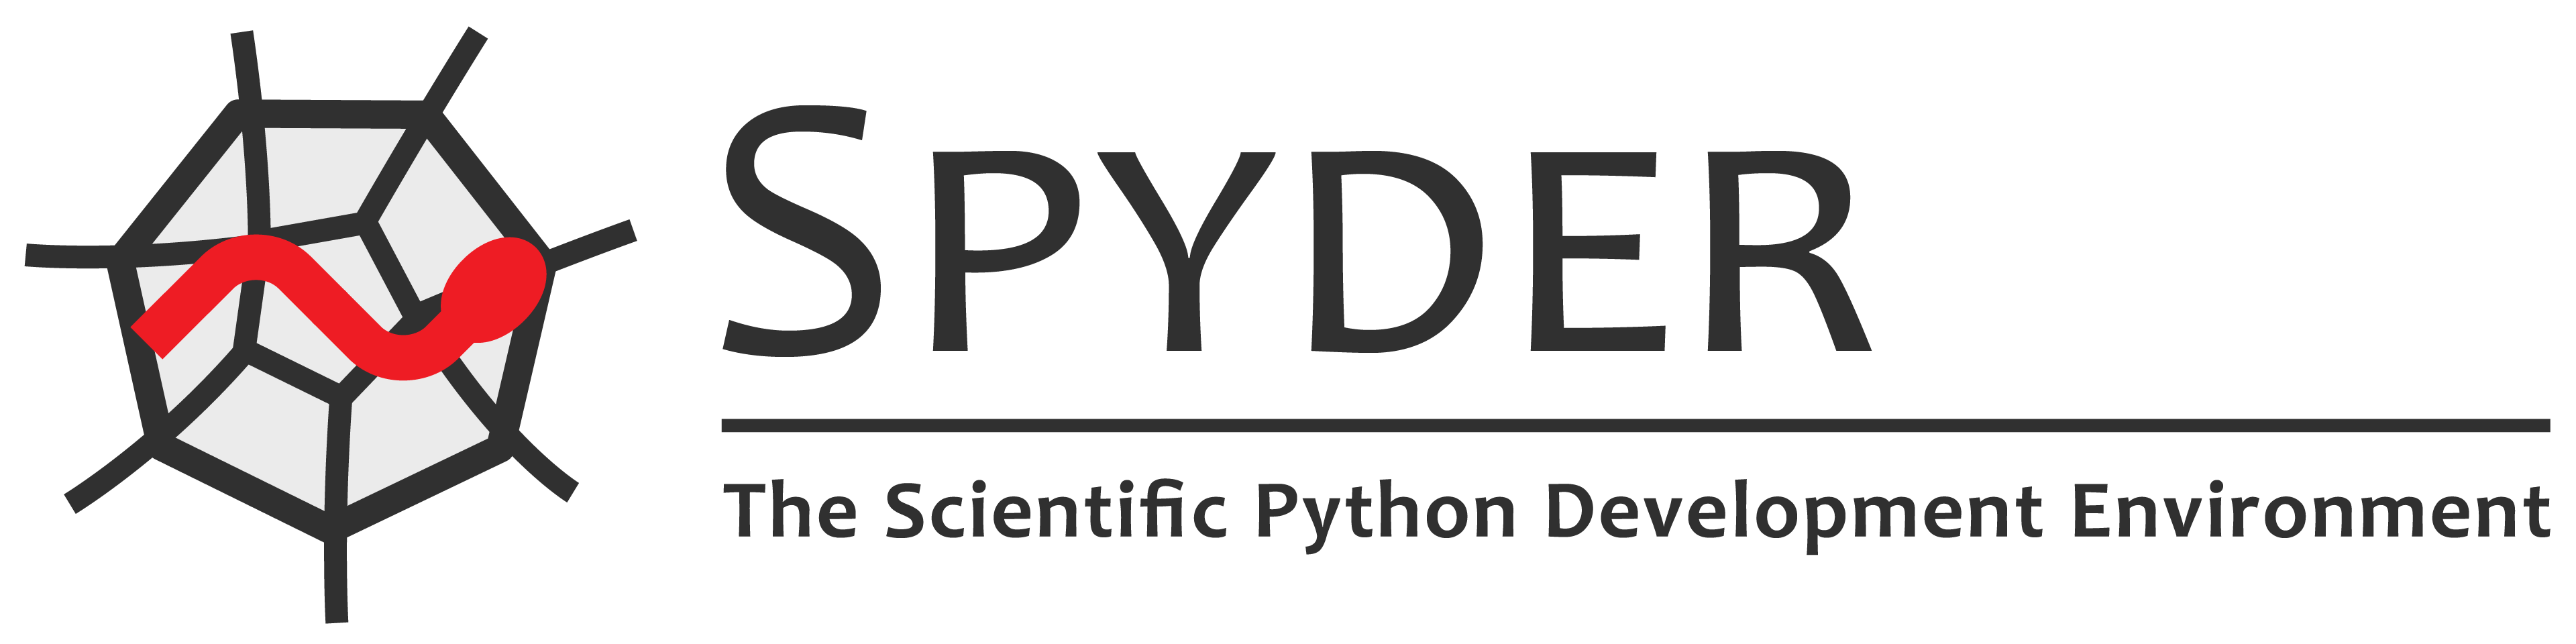 Spyder — The Scientific Python Development Environment